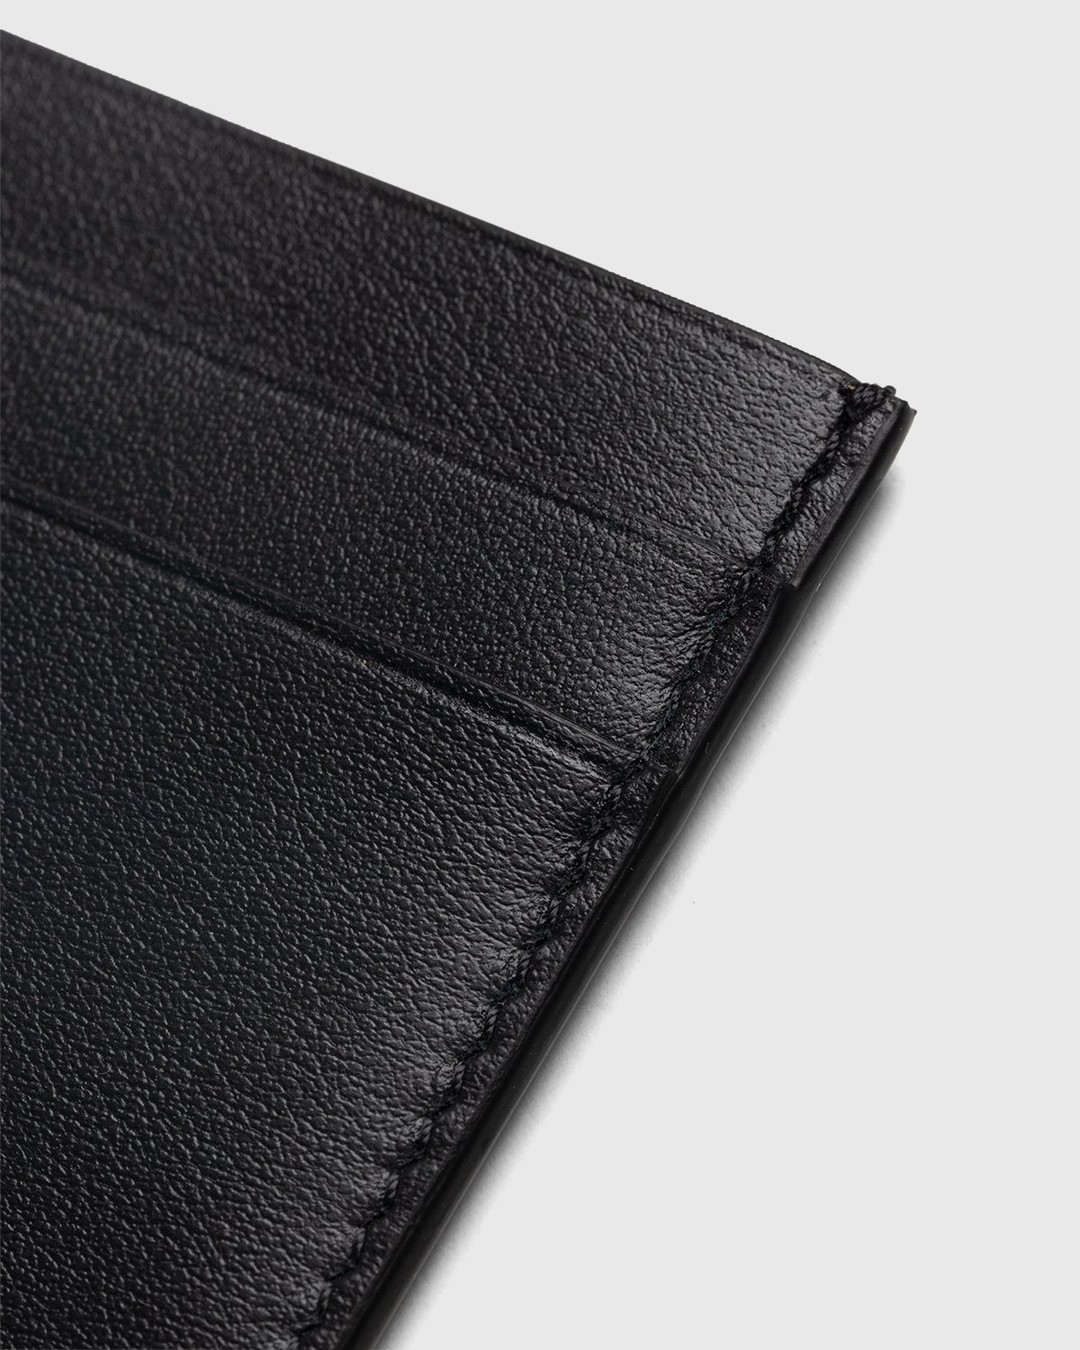 Jil Sander – Leather Card Holder Black - Wallets - Black - Image 3